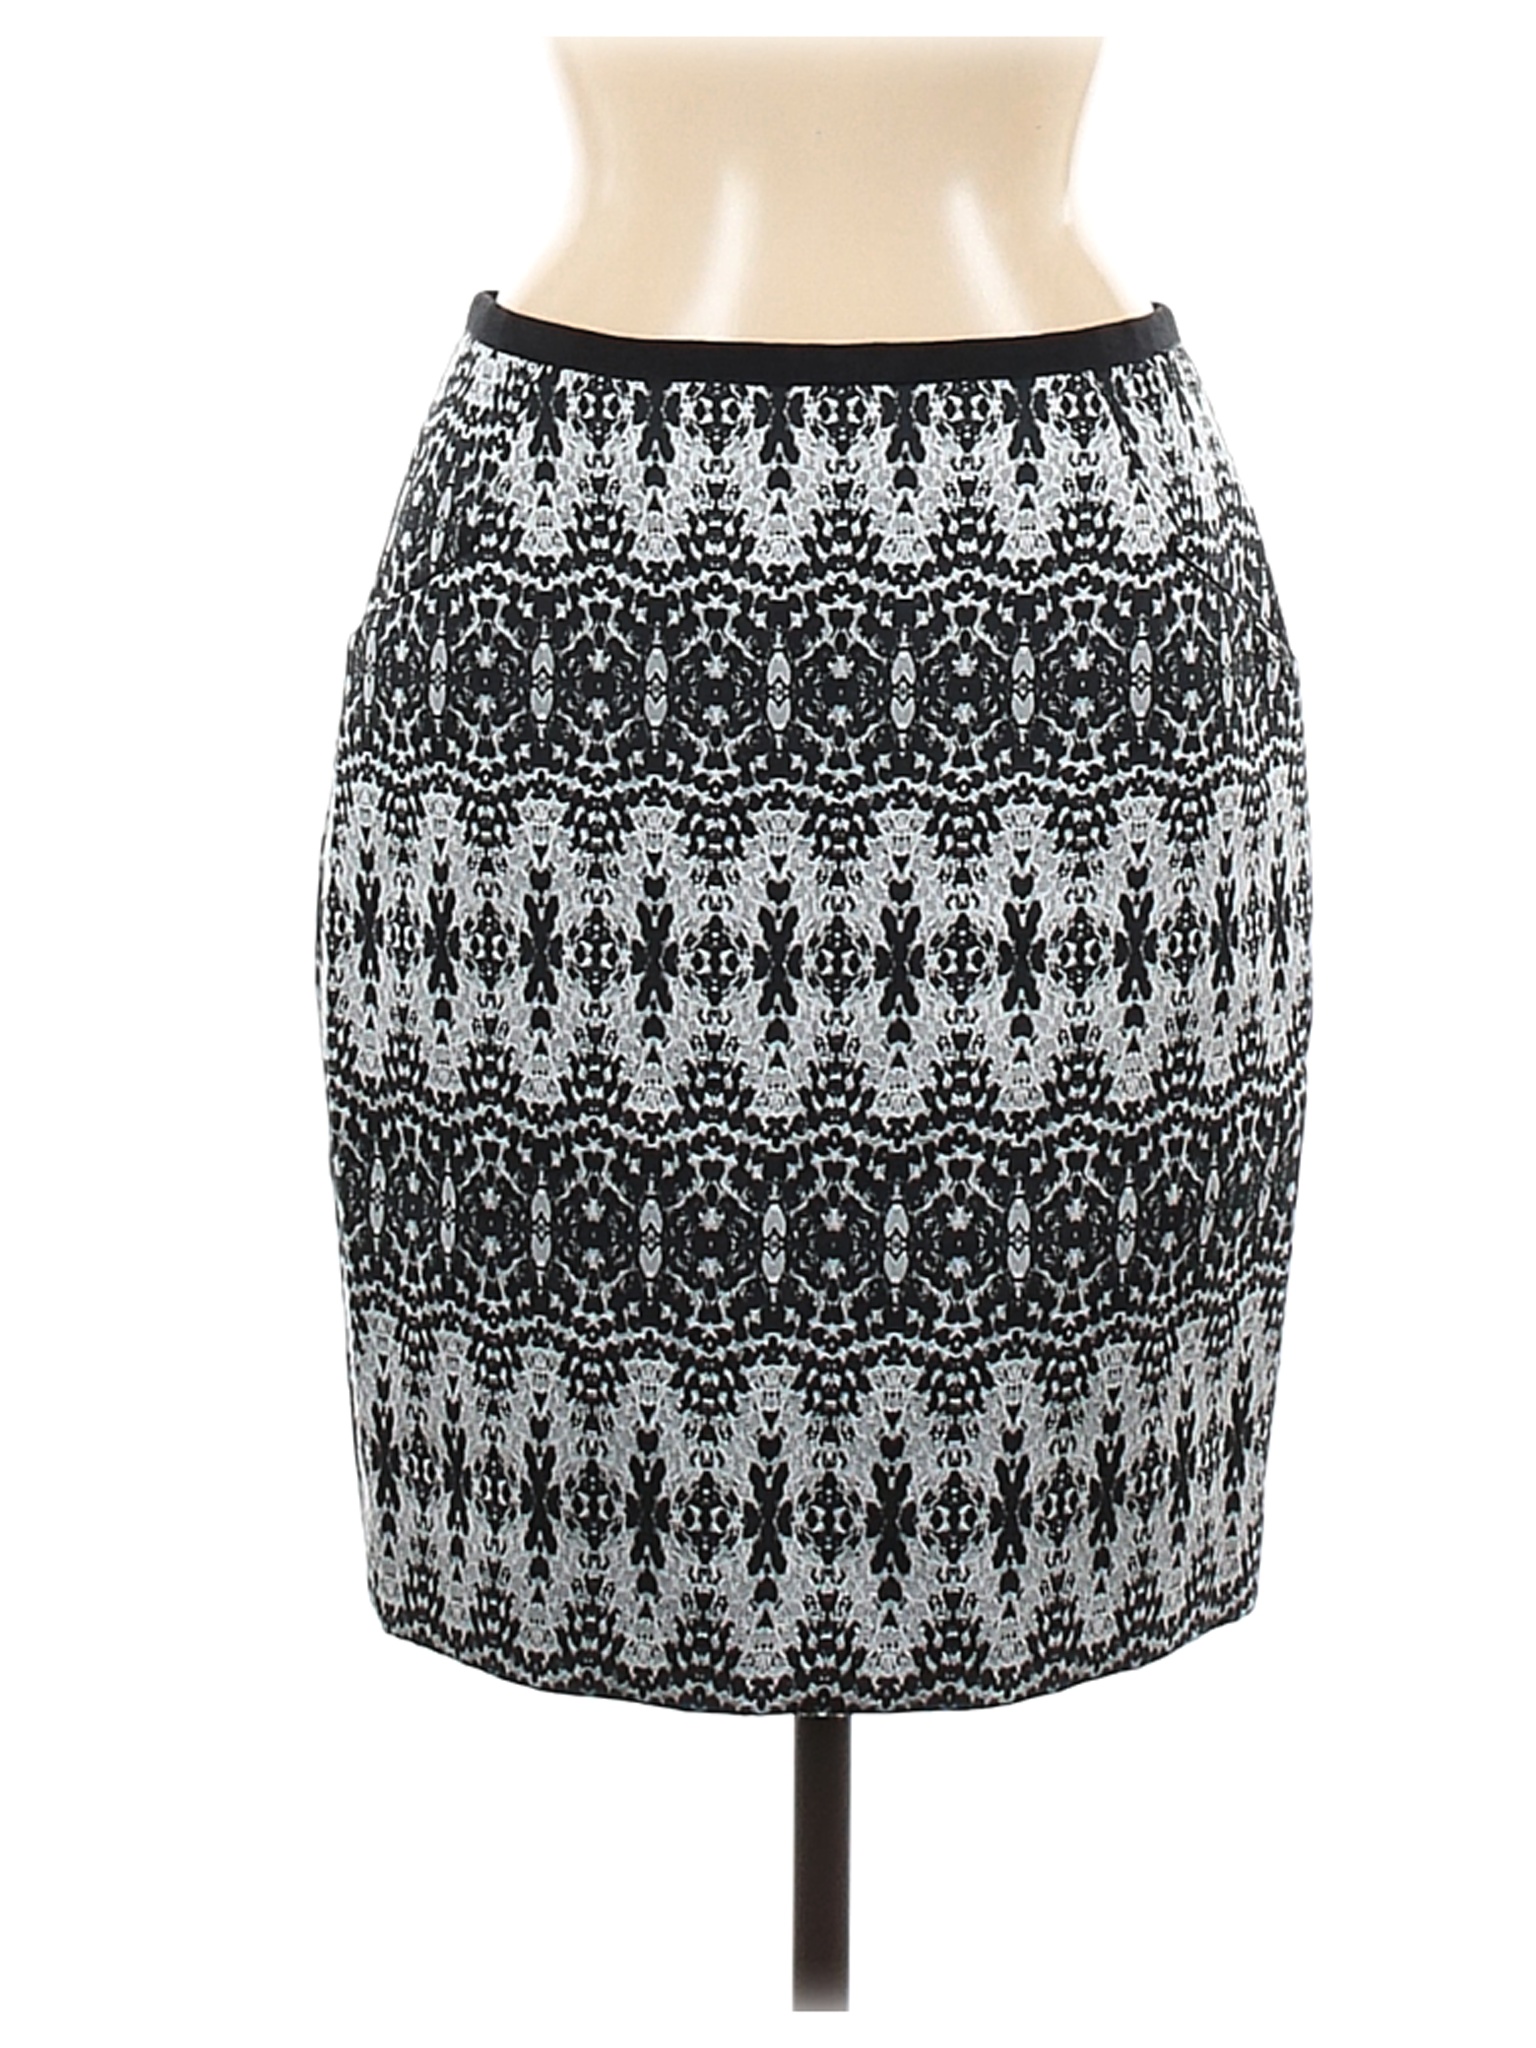 H&M Women Black Casual Skirt 8 | eBay